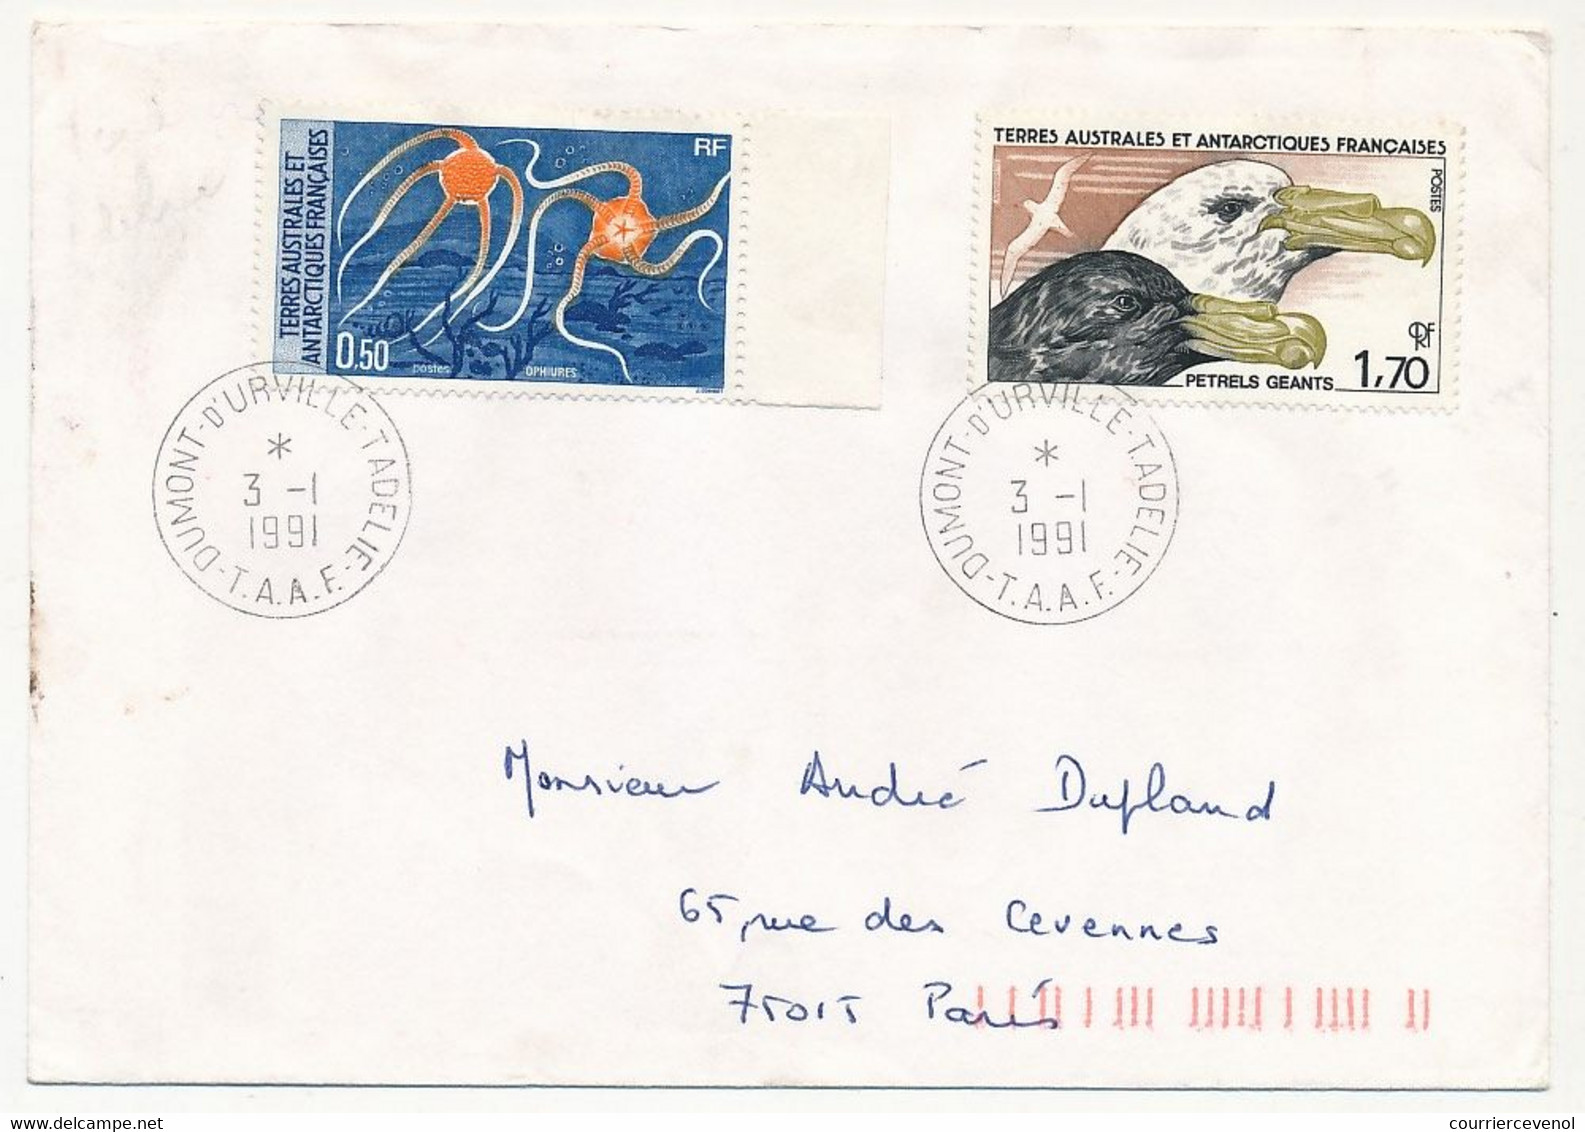 TAAF - Env. 1,70 Petrels Géants + 0,50 Ophiures - Dumont D'Urville T. Adélie - 3/1/1991 - Covers & Documents